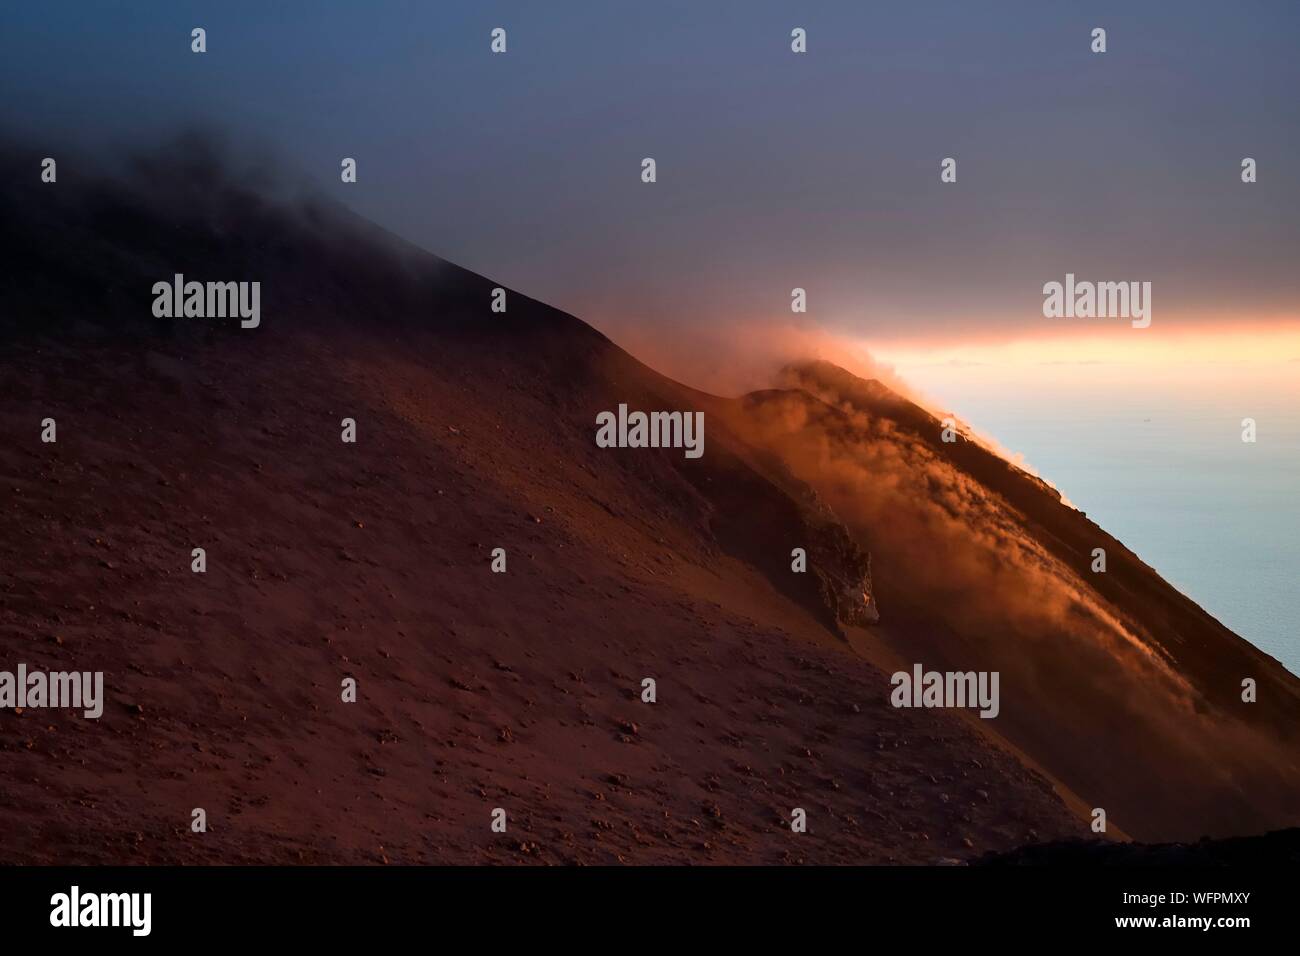 Italien, Sizilien, Liparische Inseln, als Weltkulturerbe von der UNESCO, die Insel Stromboli, fumarolen einer Eruption und Fall von lava Bomben an den Hängen des aktiven Vulkans bei Sonnenuntergang Stockfoto